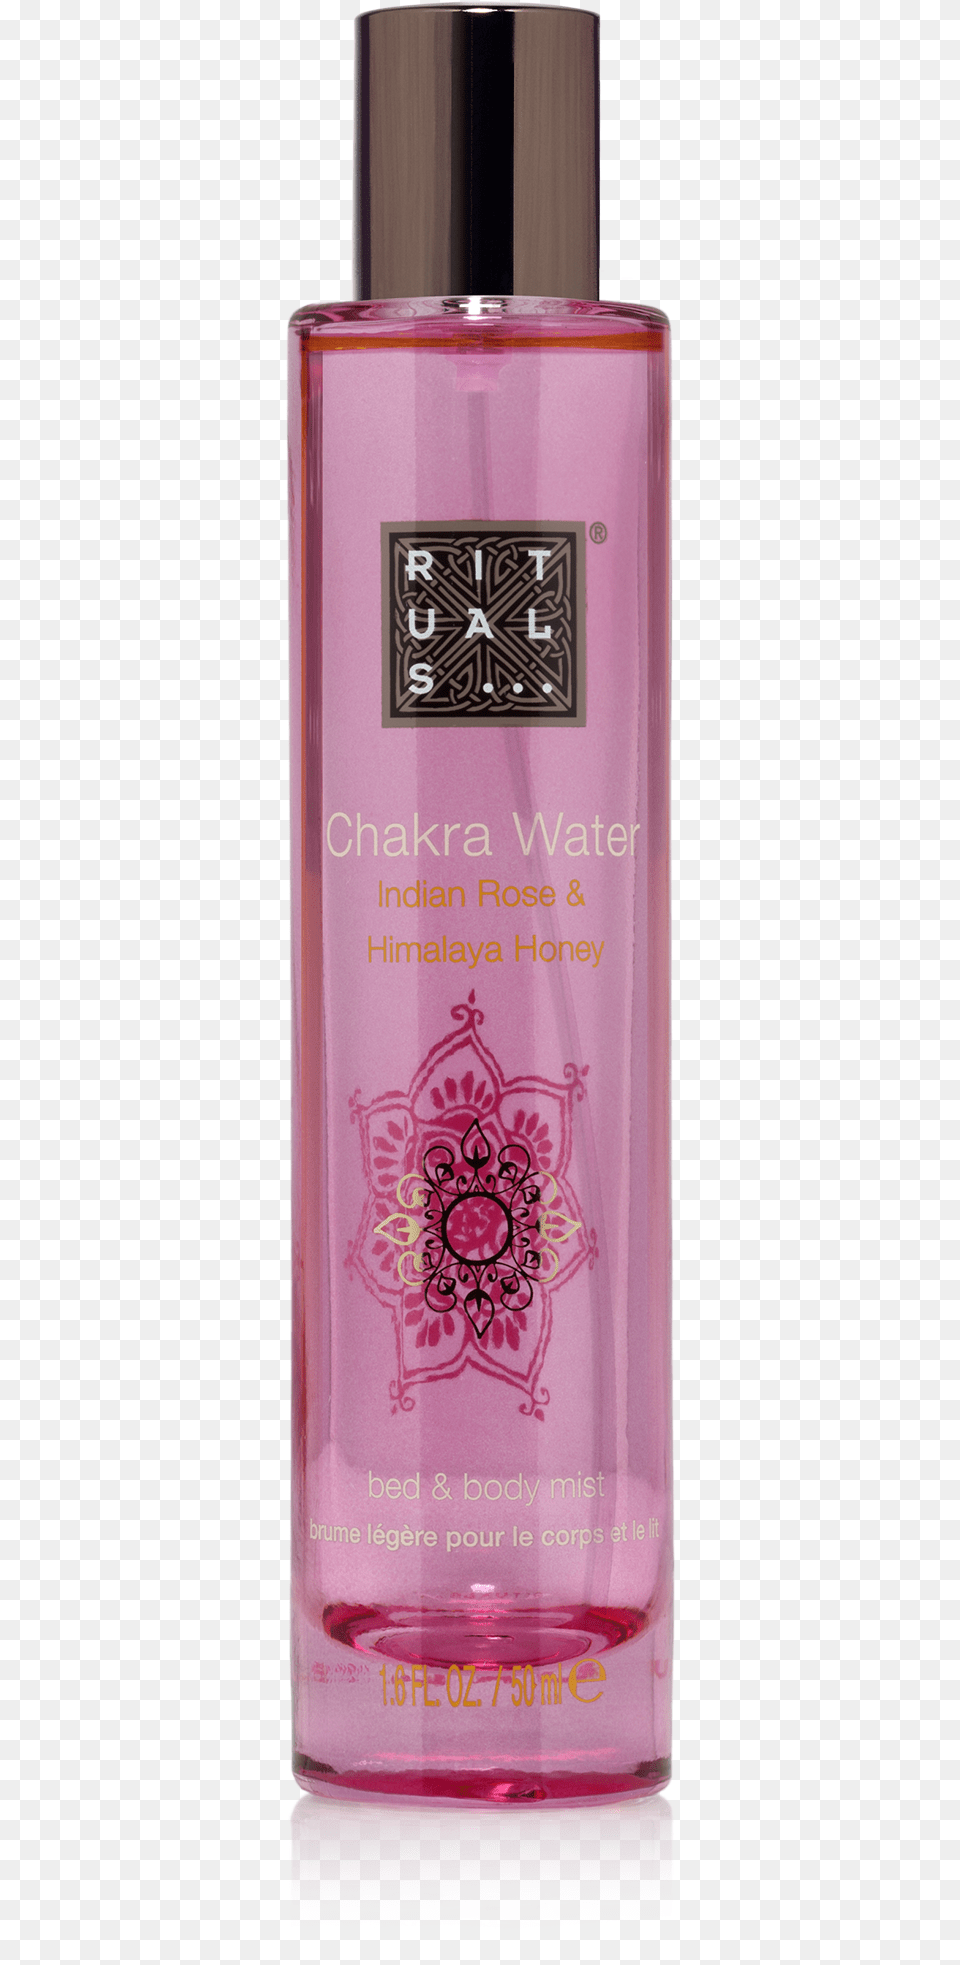 Chakra Water Rituals Chakra Water Body Mist 50 Ml, Bottle, Cosmetics, Perfume Png Image